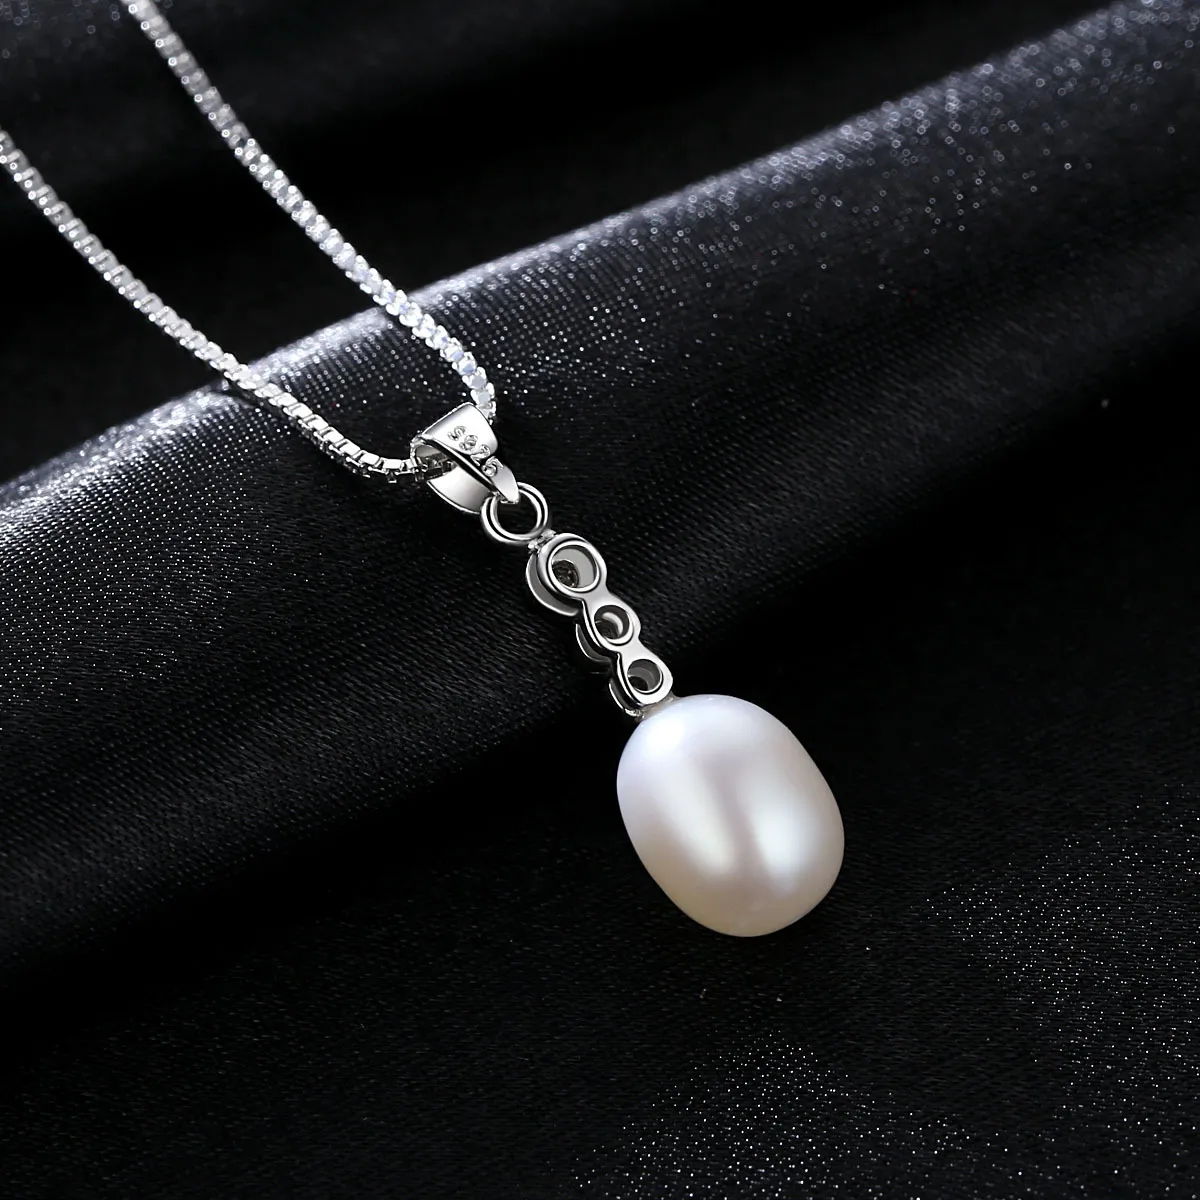 Mode coréenne perle d'eau douce s925 pendentif en argent collier femmes bijoux charme dame brillant Zircon collier chaîne exquis collier accessoires cadeau